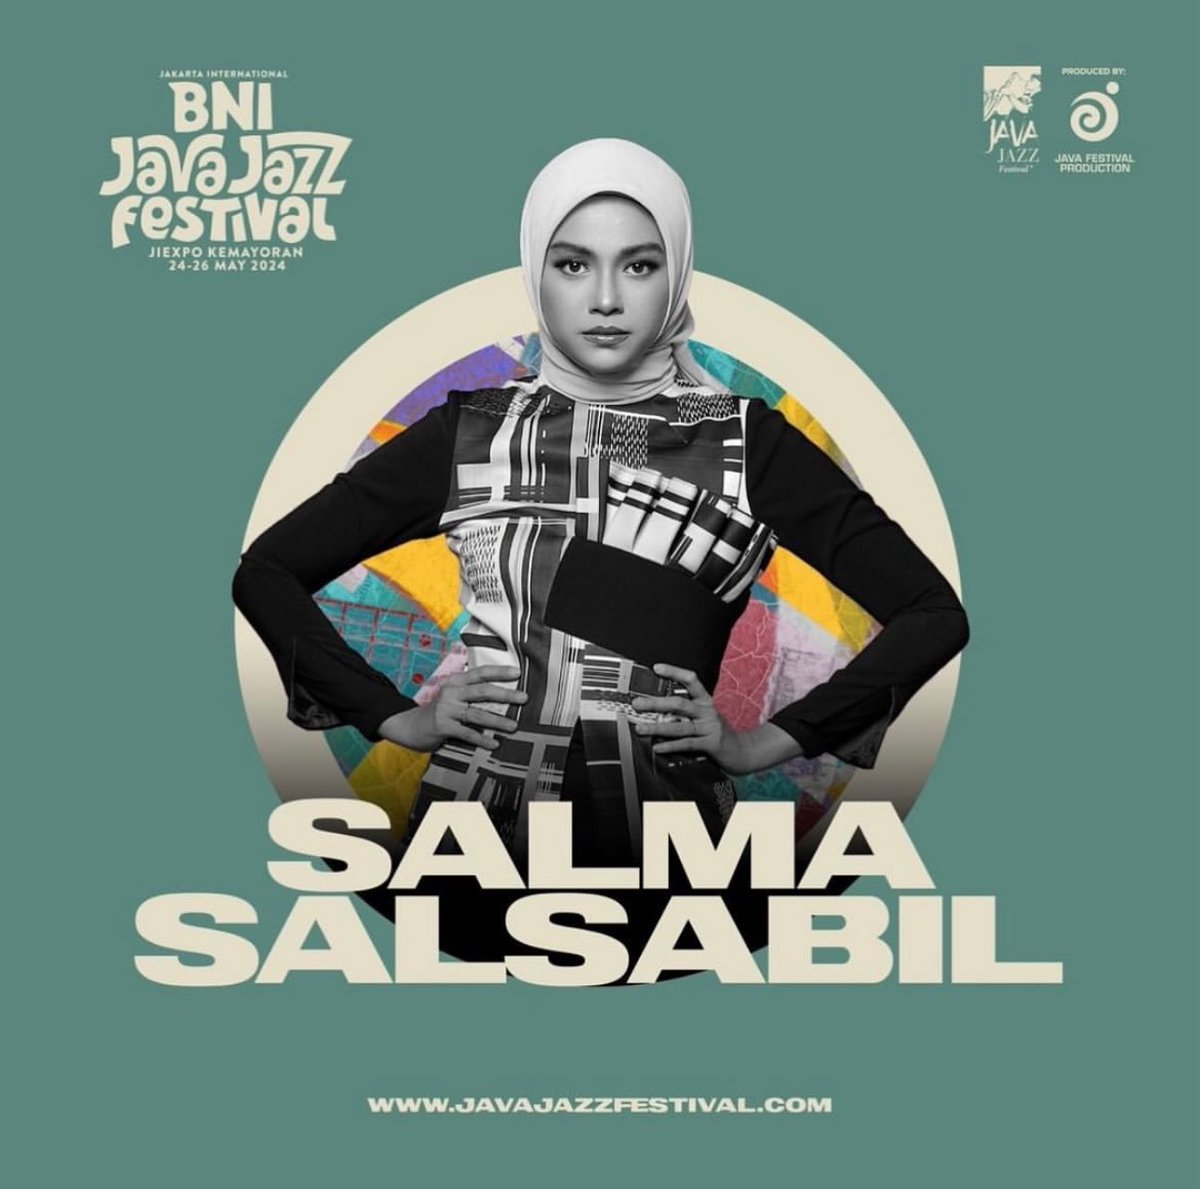 #javajazzfestival 2024 tahun ini special bersama @Mahalinidisini @GanyGery dan Salma Yuk buruan dateng di tanggal 24-25 May 2024 ini di JIEXPO Kemayoran, Jakarta 🙌 #Mahalini #GeryGany #SalmaSalsabil #JJF2024 #starhitsid